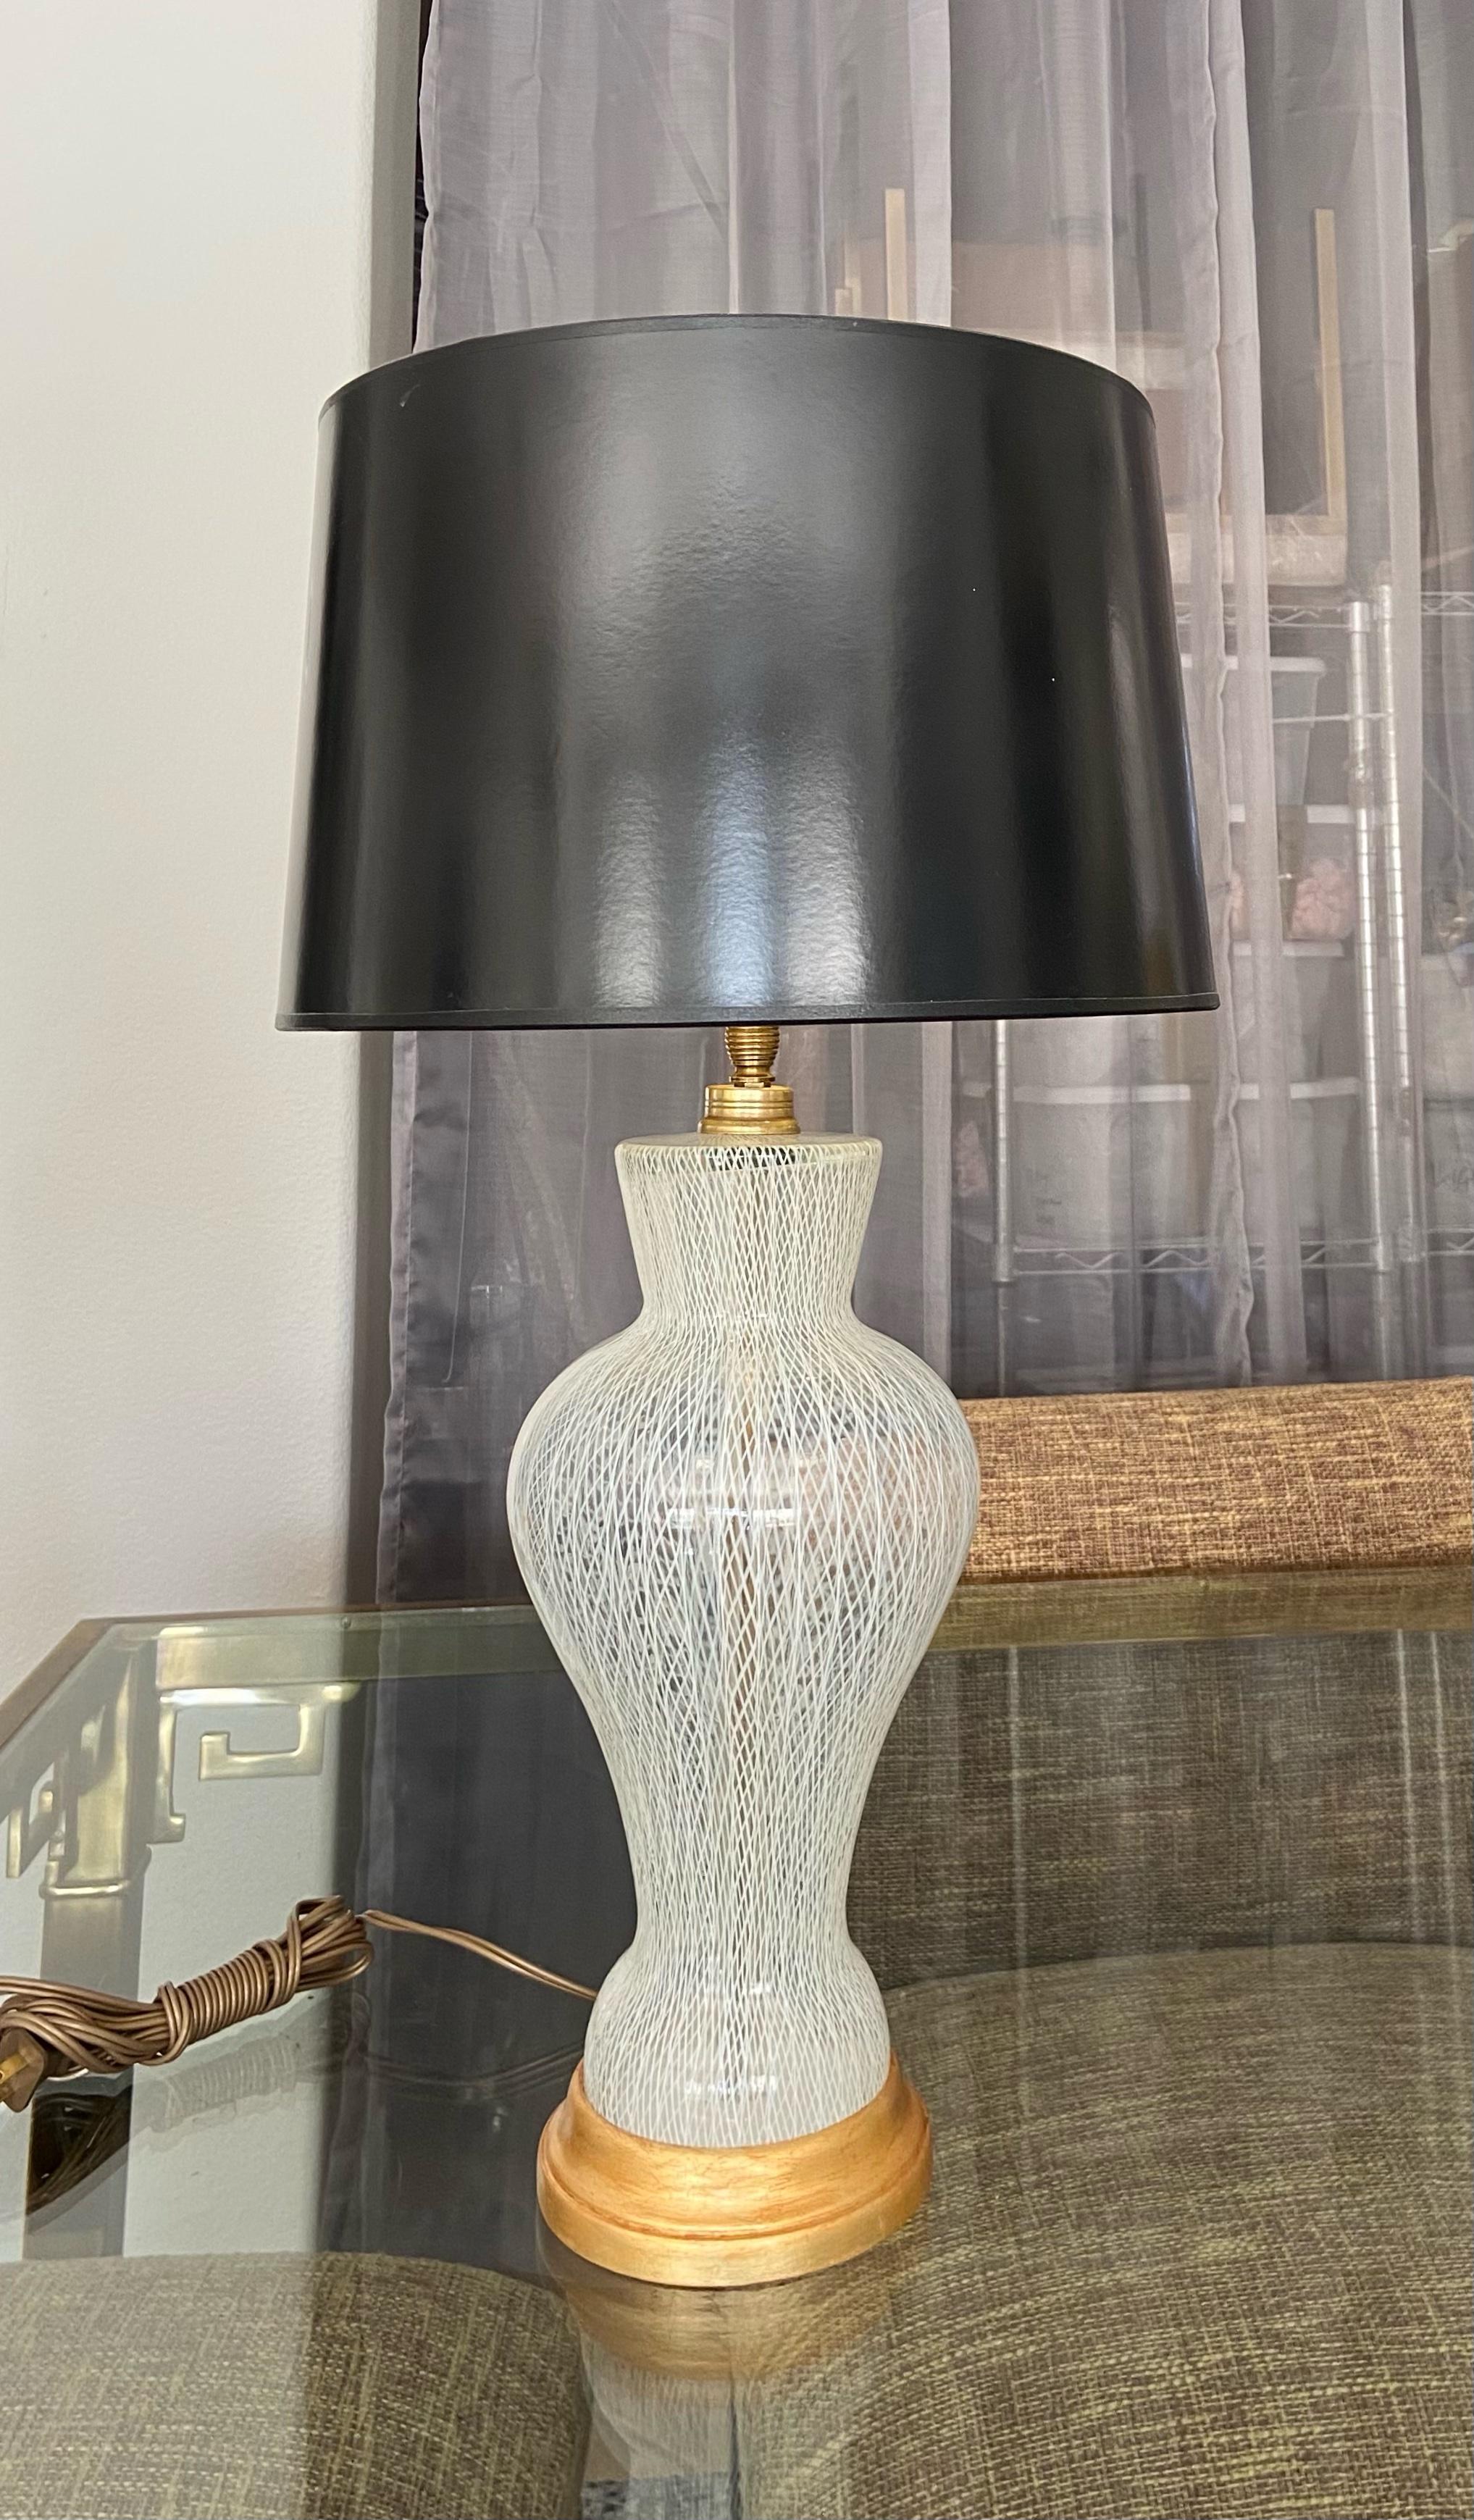 Lampe de table à motif latticino (dentelle blanche) en verre d'art vénitien de Murano, sur une base en bois doré avec des ferrures en laiton. Câblage refait à neuf avec une nouvelle prise à 3 voies en laiton et un nouveau cordon. Le verre soufflé à